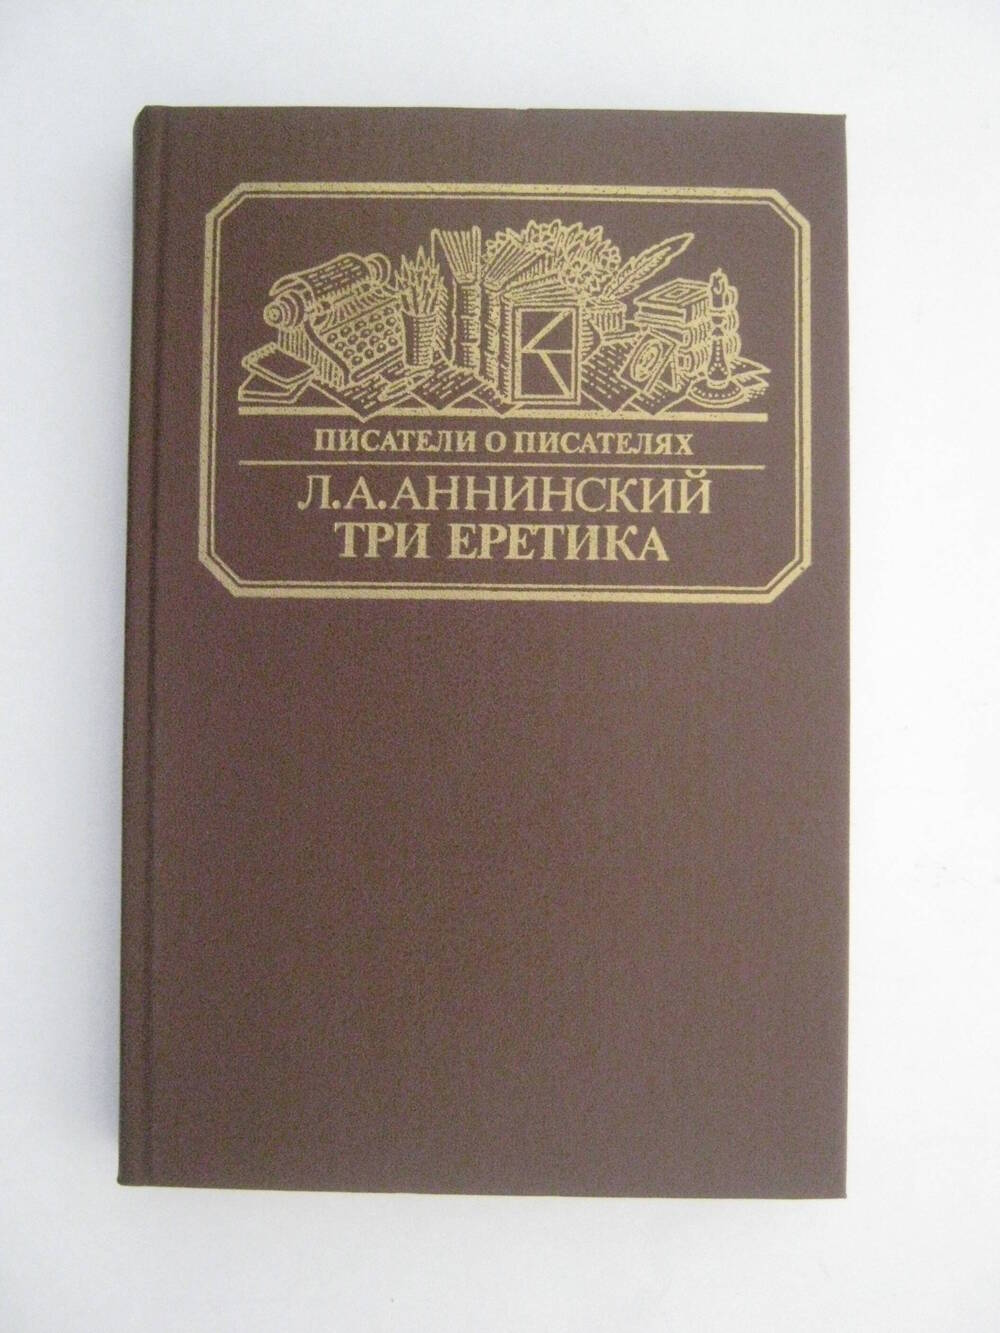 Книга. Писатели о писателях. Л.А. Аннинский. Три еретика. – М.: Книга, 1988.